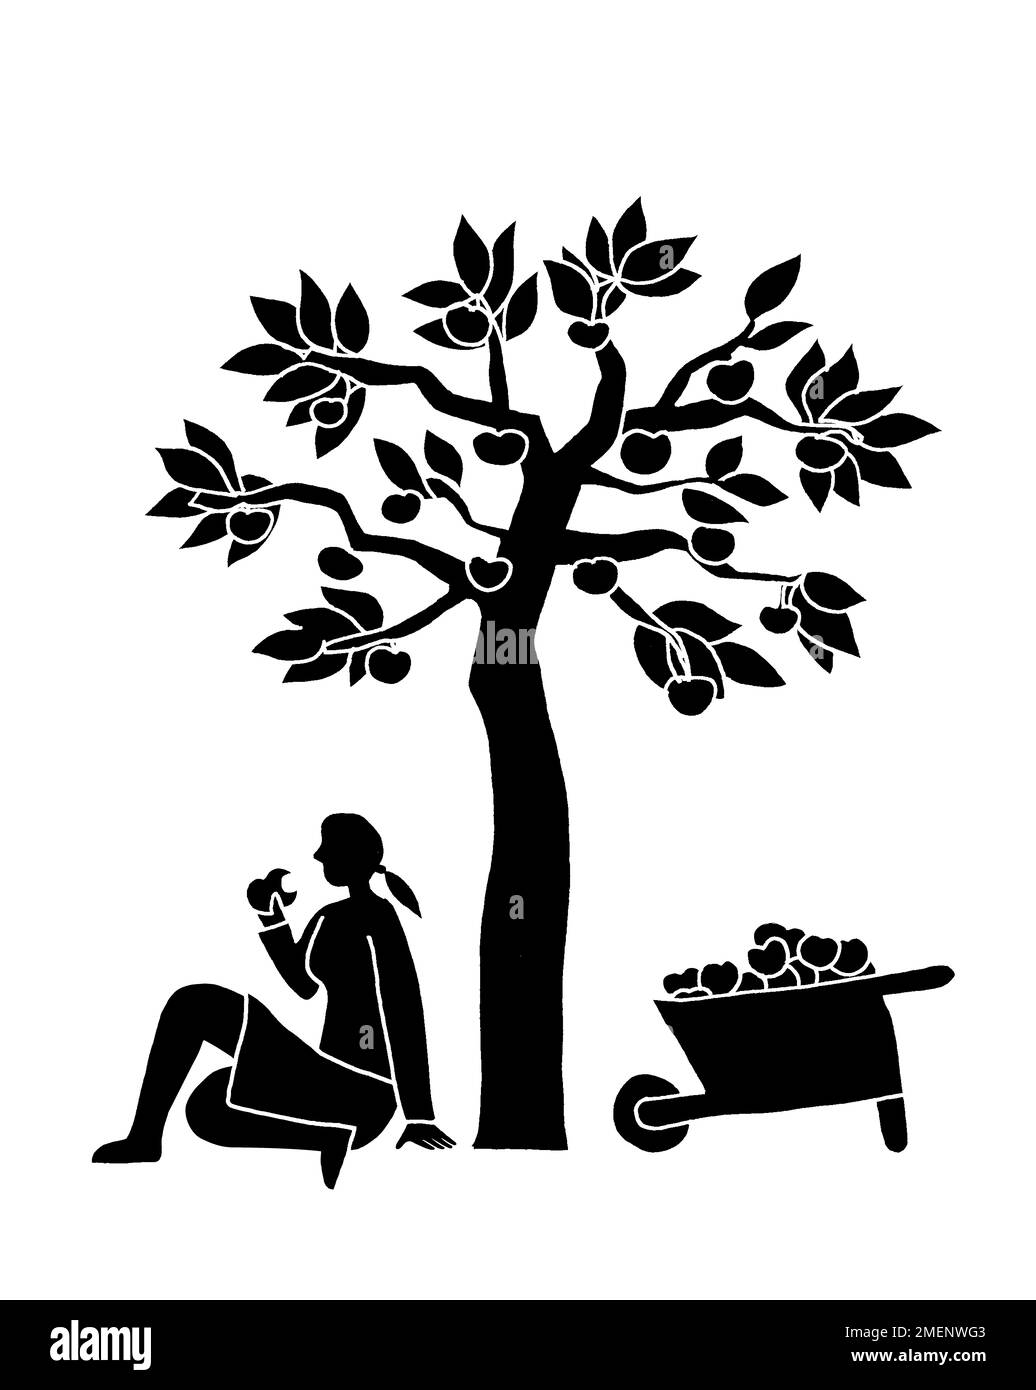 Immagine in bianco e nero di una donna seduta sotto un albero di mele che mangia una mela Foto Stock